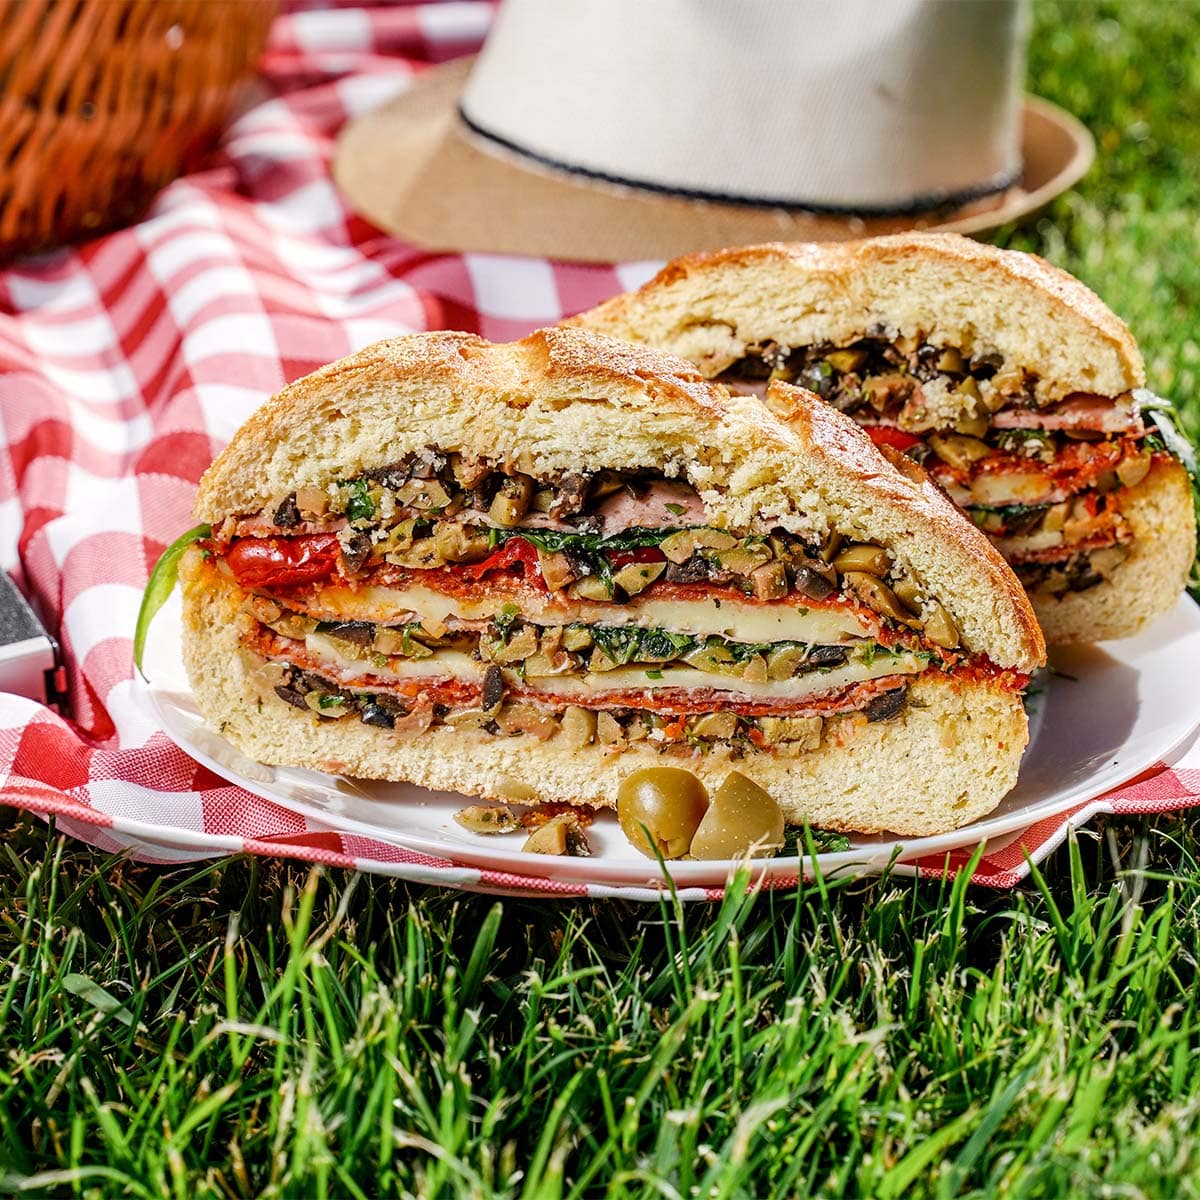 Muffaletta Sandwich outside grass in front.